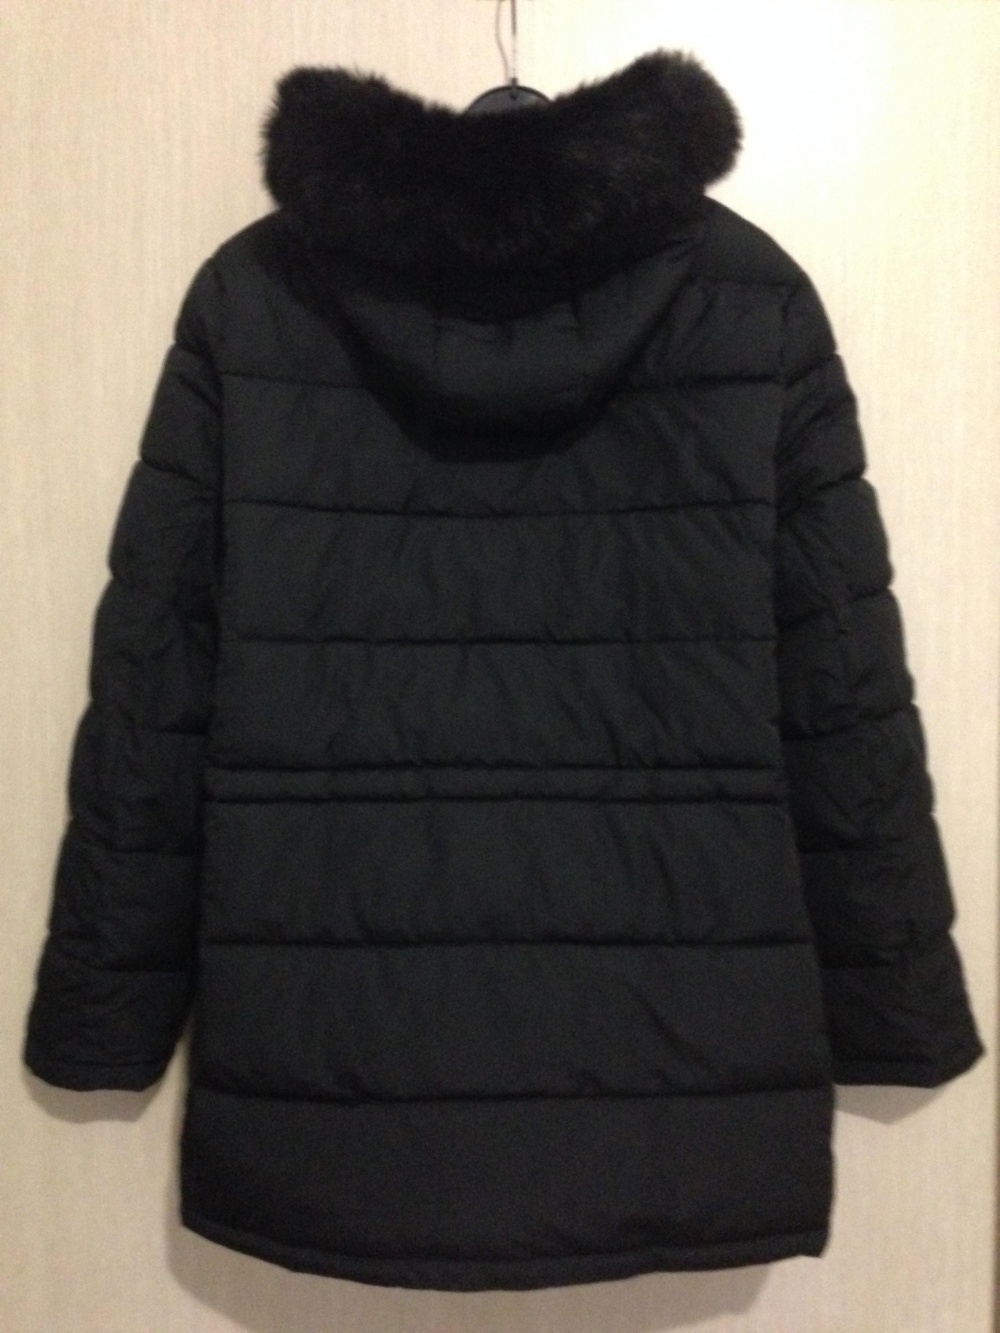 Утеплённая курточка " Gap ", 48-50 размер